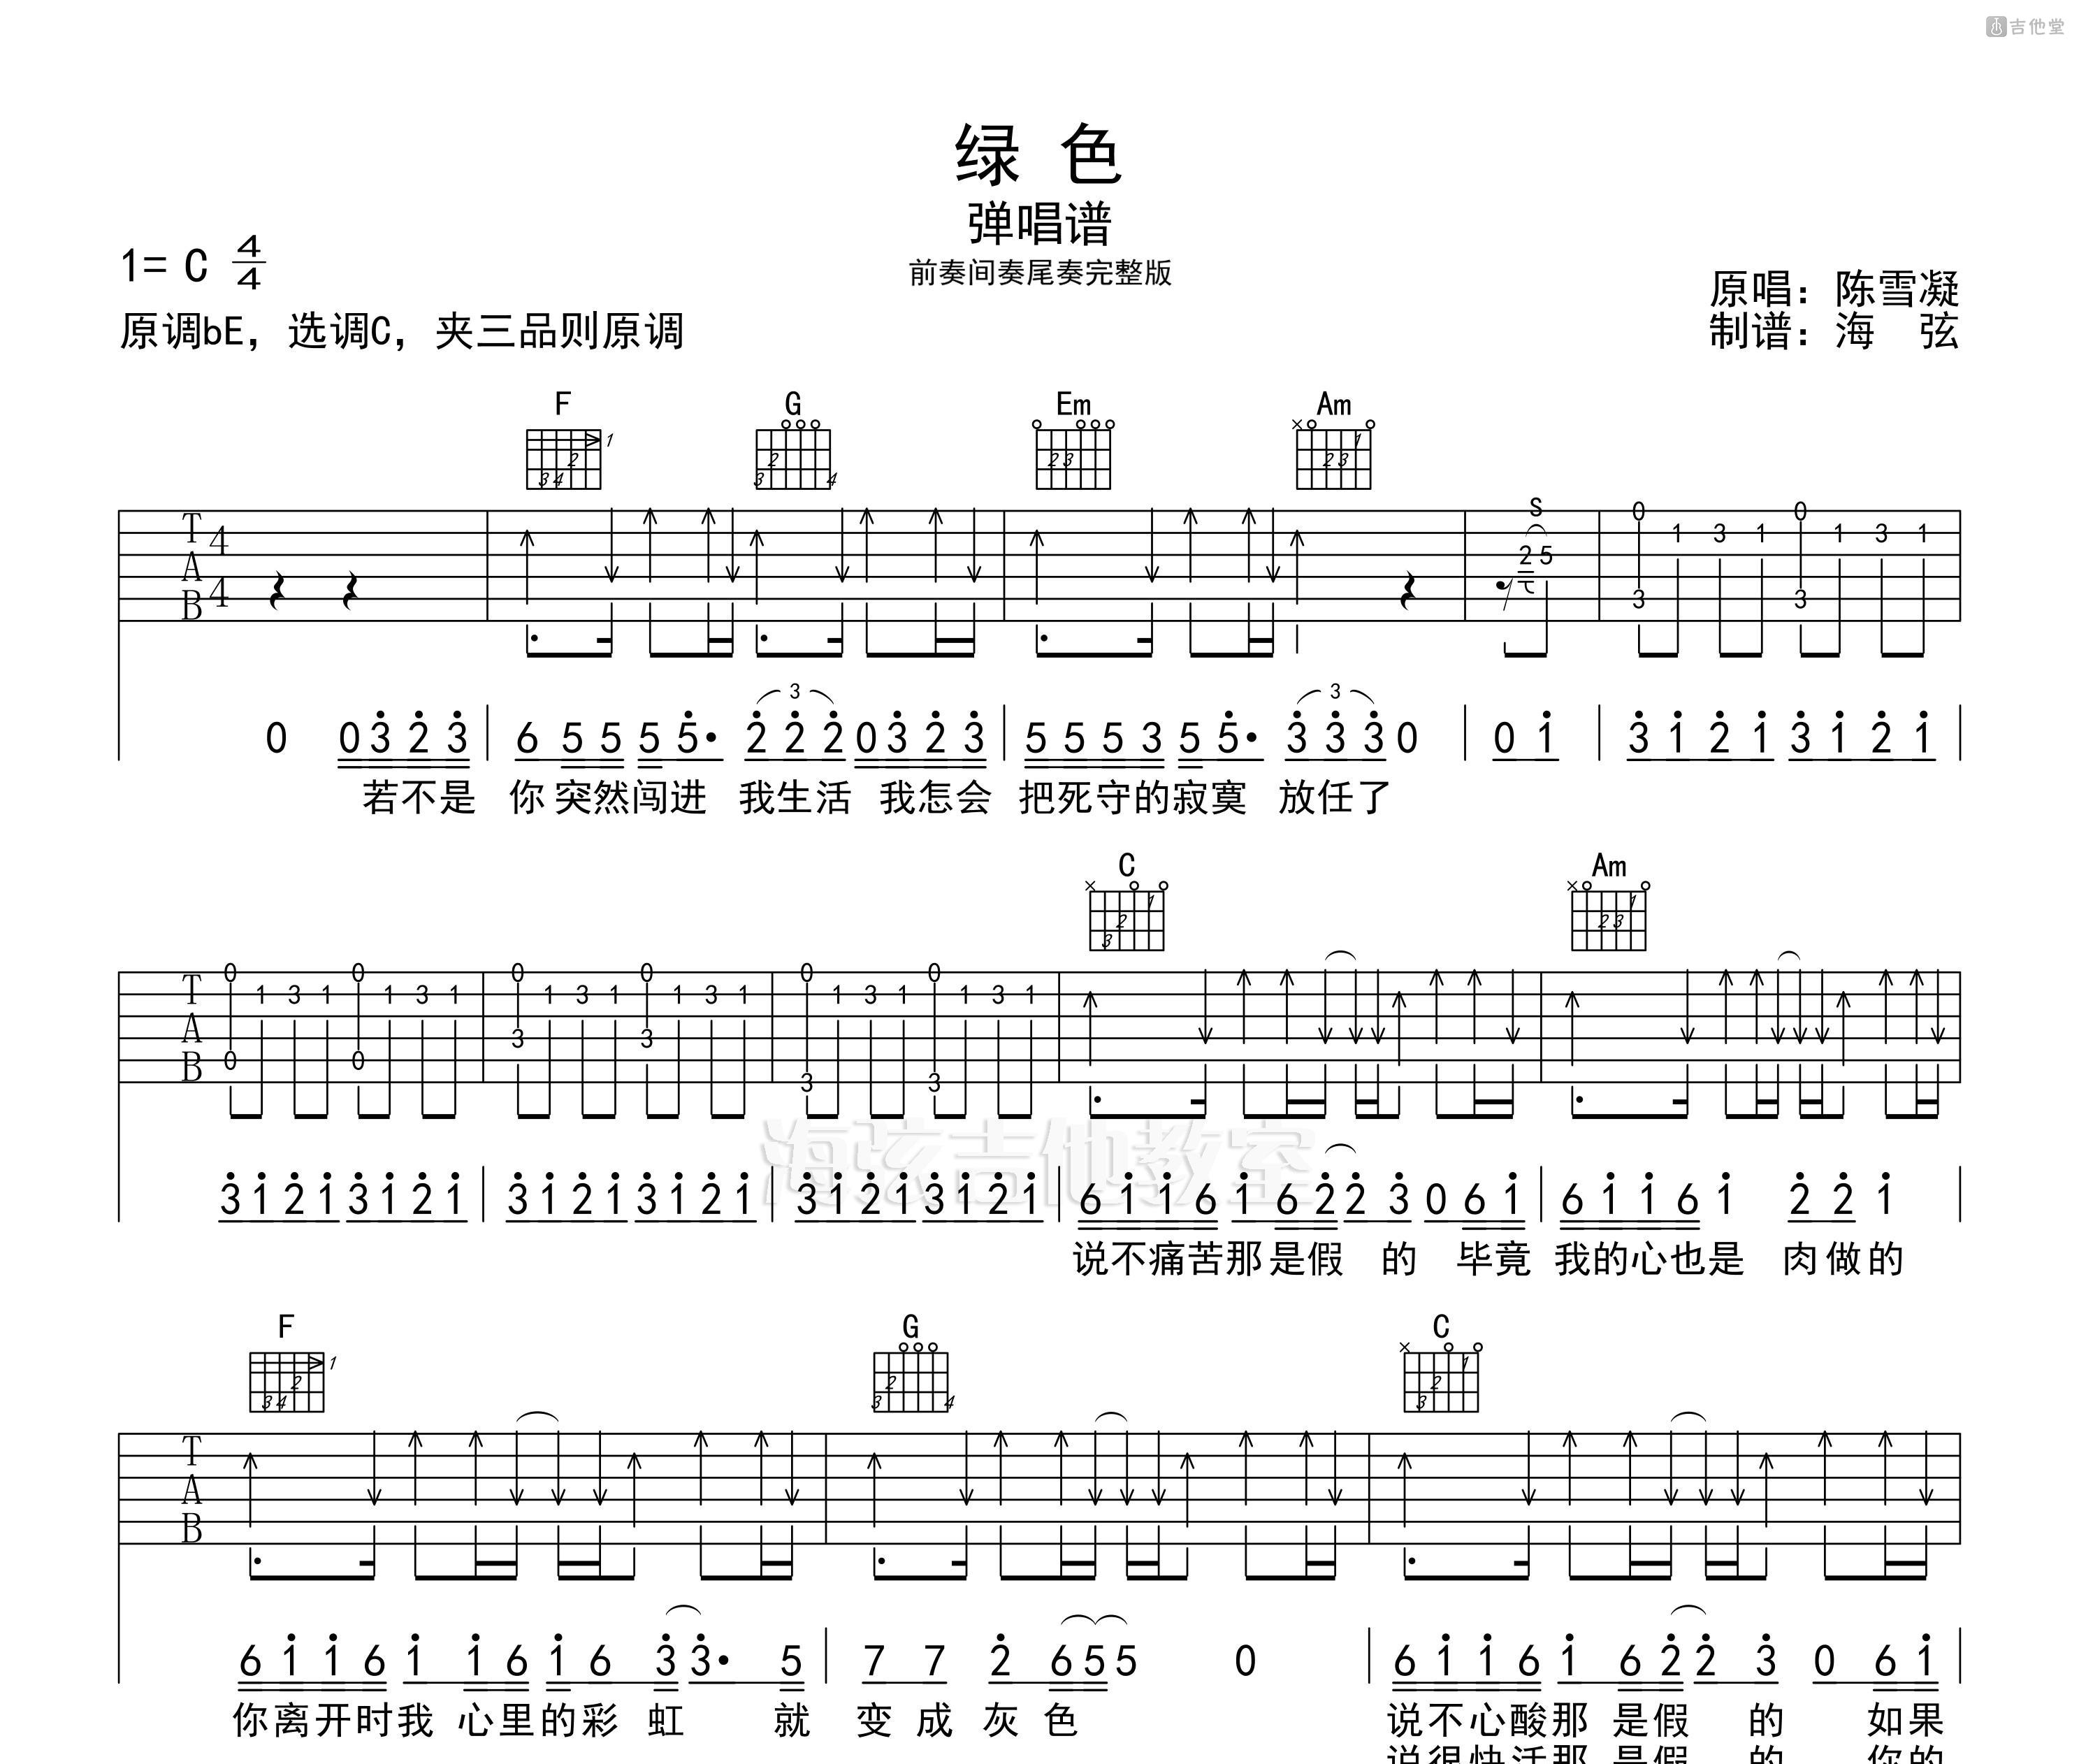 绿色-陈雪凝 - 五线谱和双手数字简谱和吉他谱 - 阿金音乐教学改编版本-阿金音乐教学 - 弹琴吧